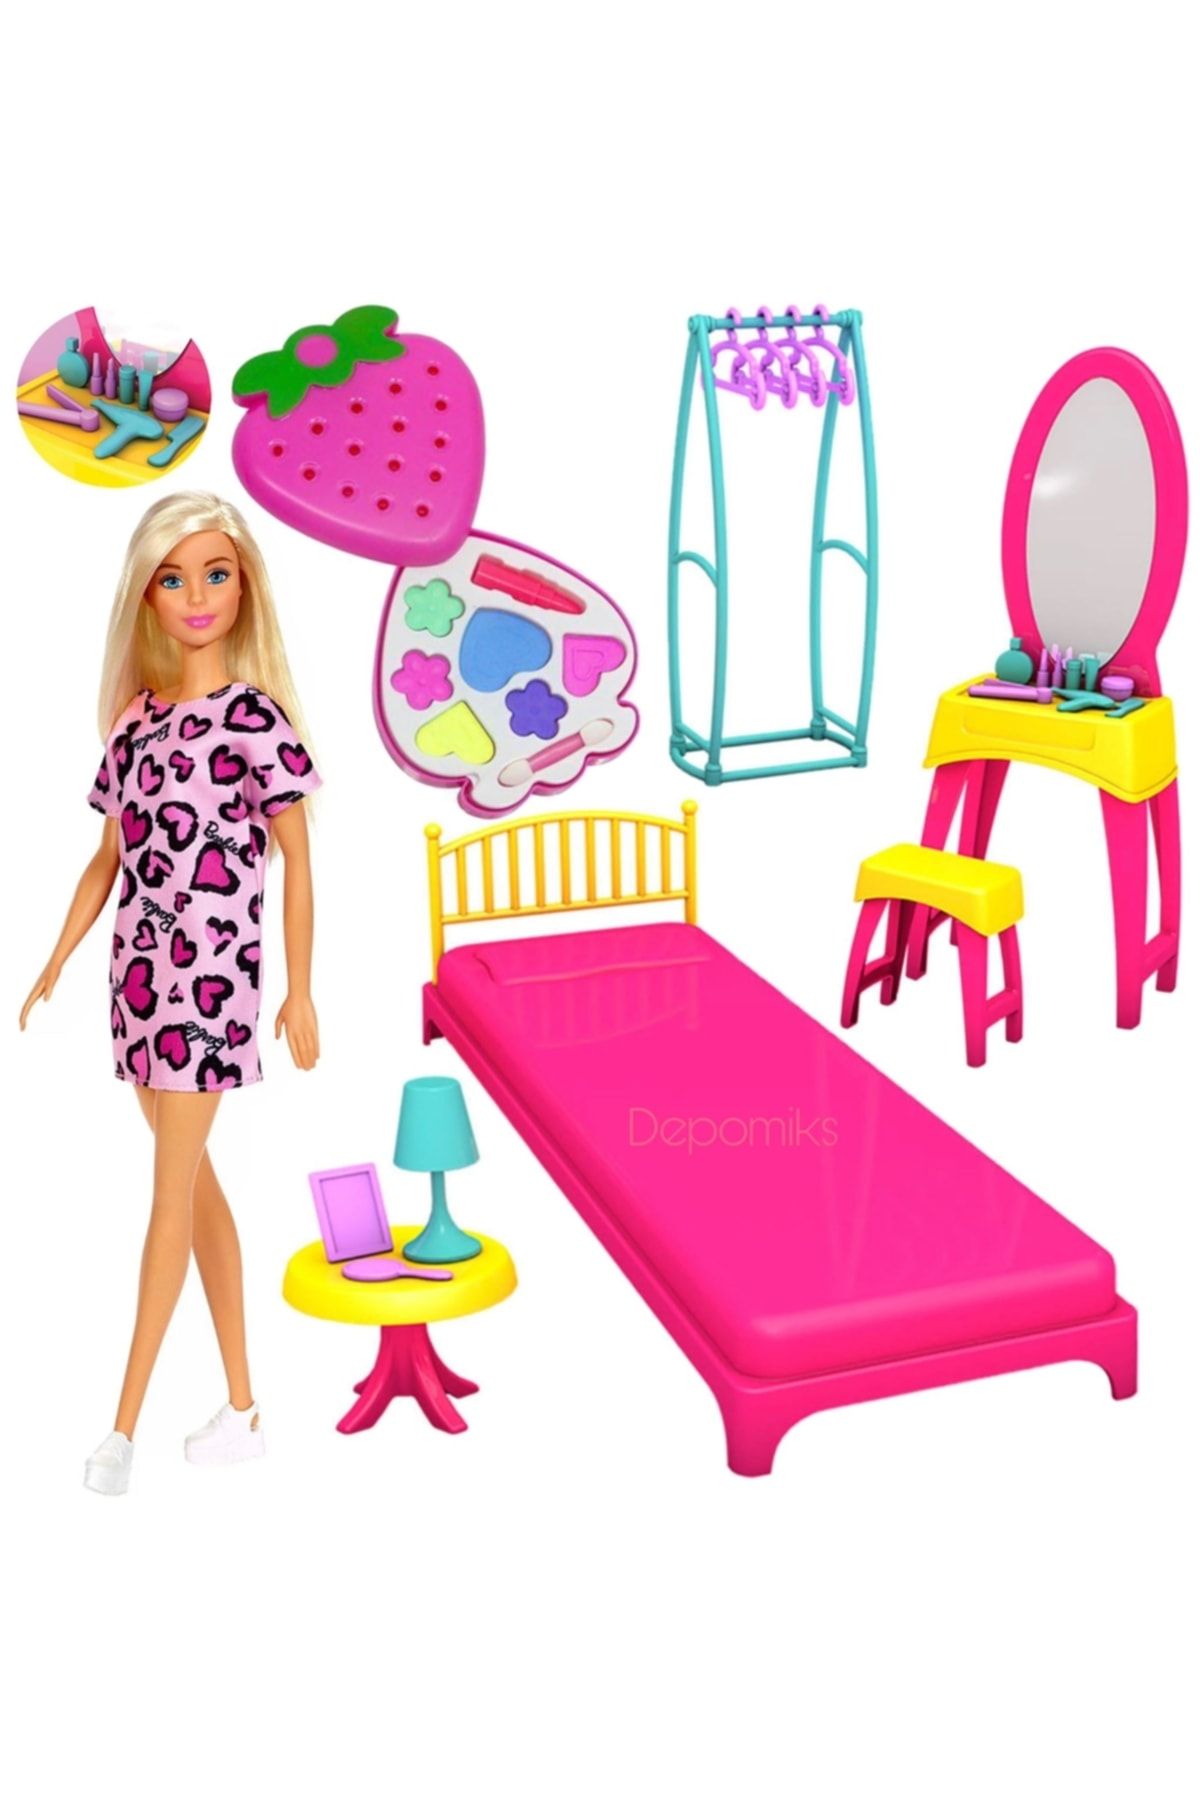 Depomiks Avm Barbie Şık Elbiseli Bebek + Oyuncak Aksesuarlı Yatak Odası + Çilek Makyaj Seti Kız Çocuk Oyuncak